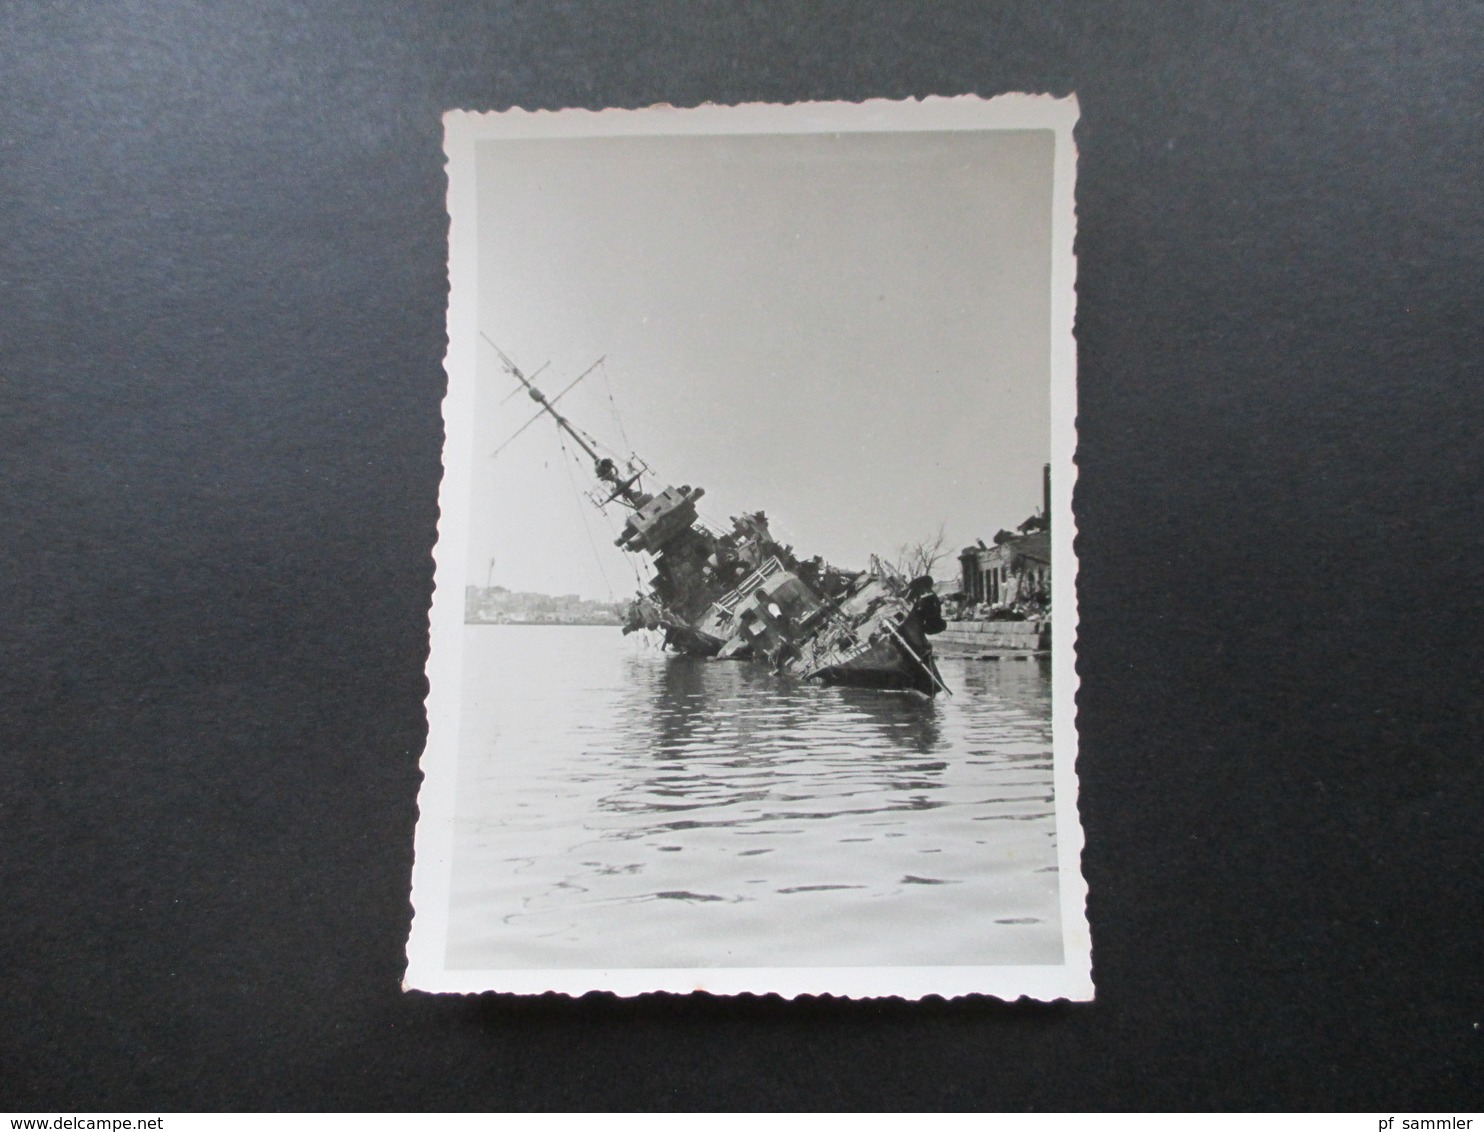 Das eroberte Sewastopol 1942 versenkte Kriegschiffe / Militärparade / Schiffe / Fahrzeuge Wehrmacht! Krim / Ukraine